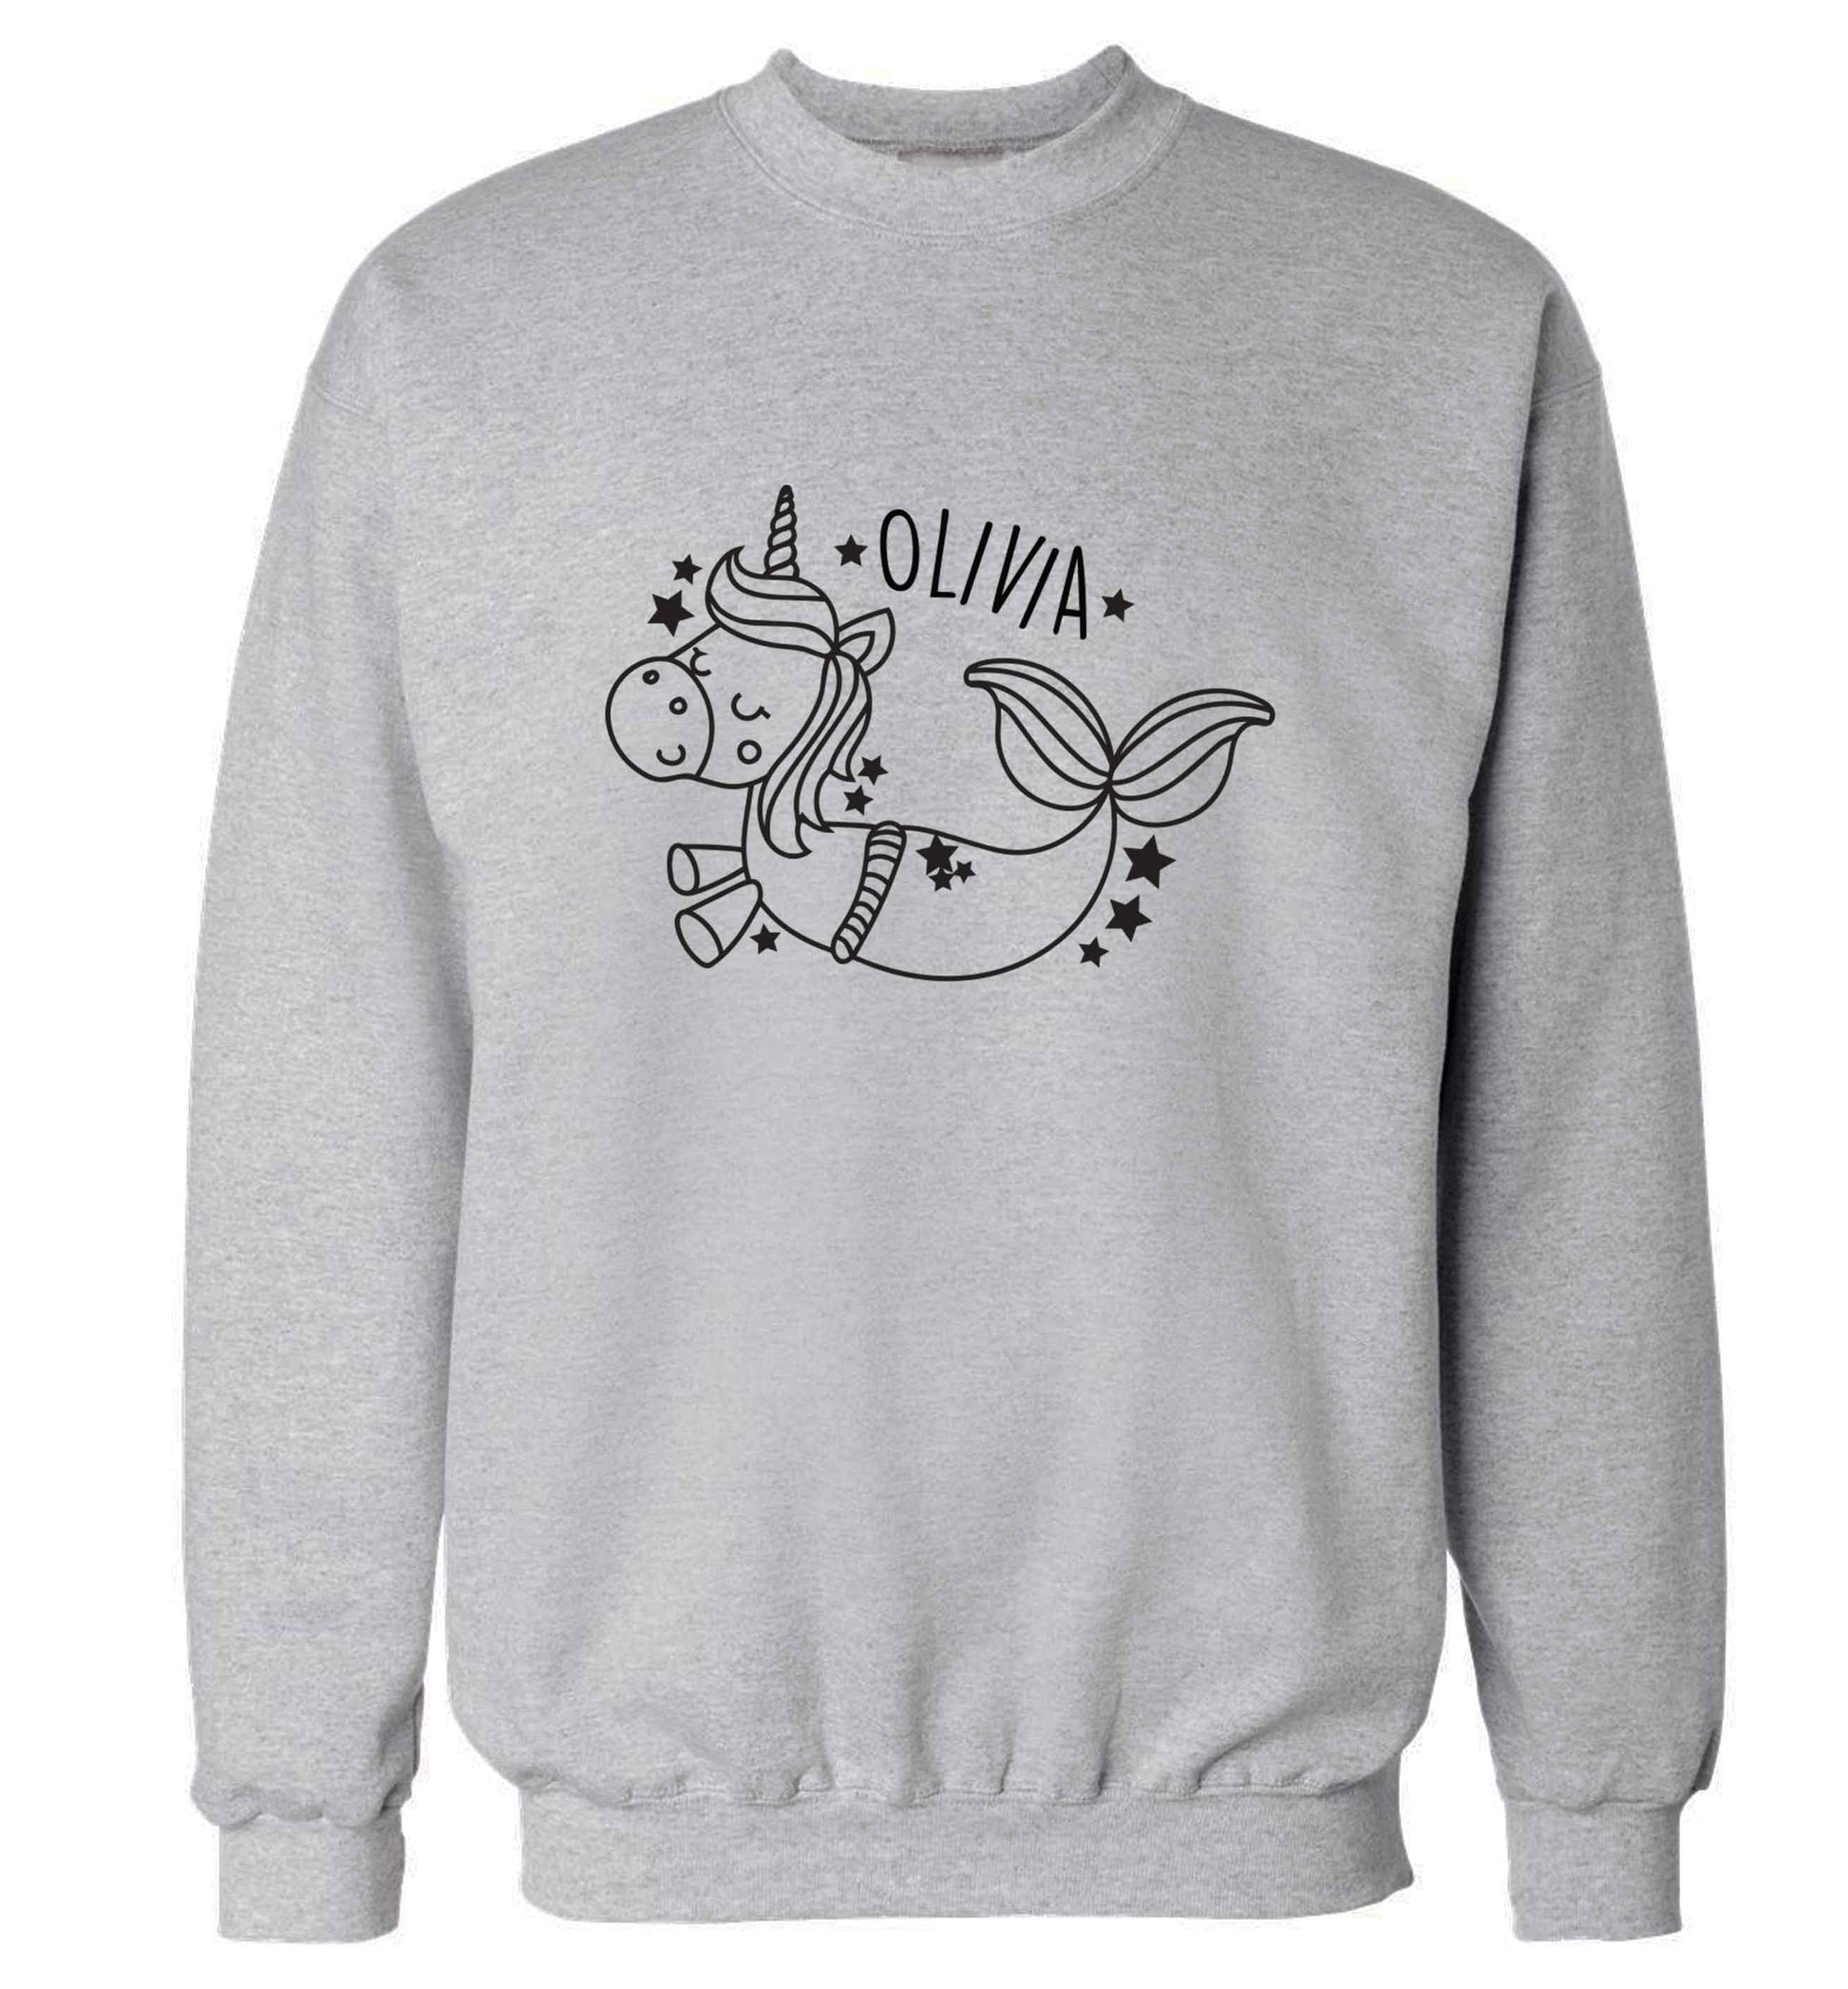 Unicorn mermaid - any name adult's unisex grey sweater 2XL